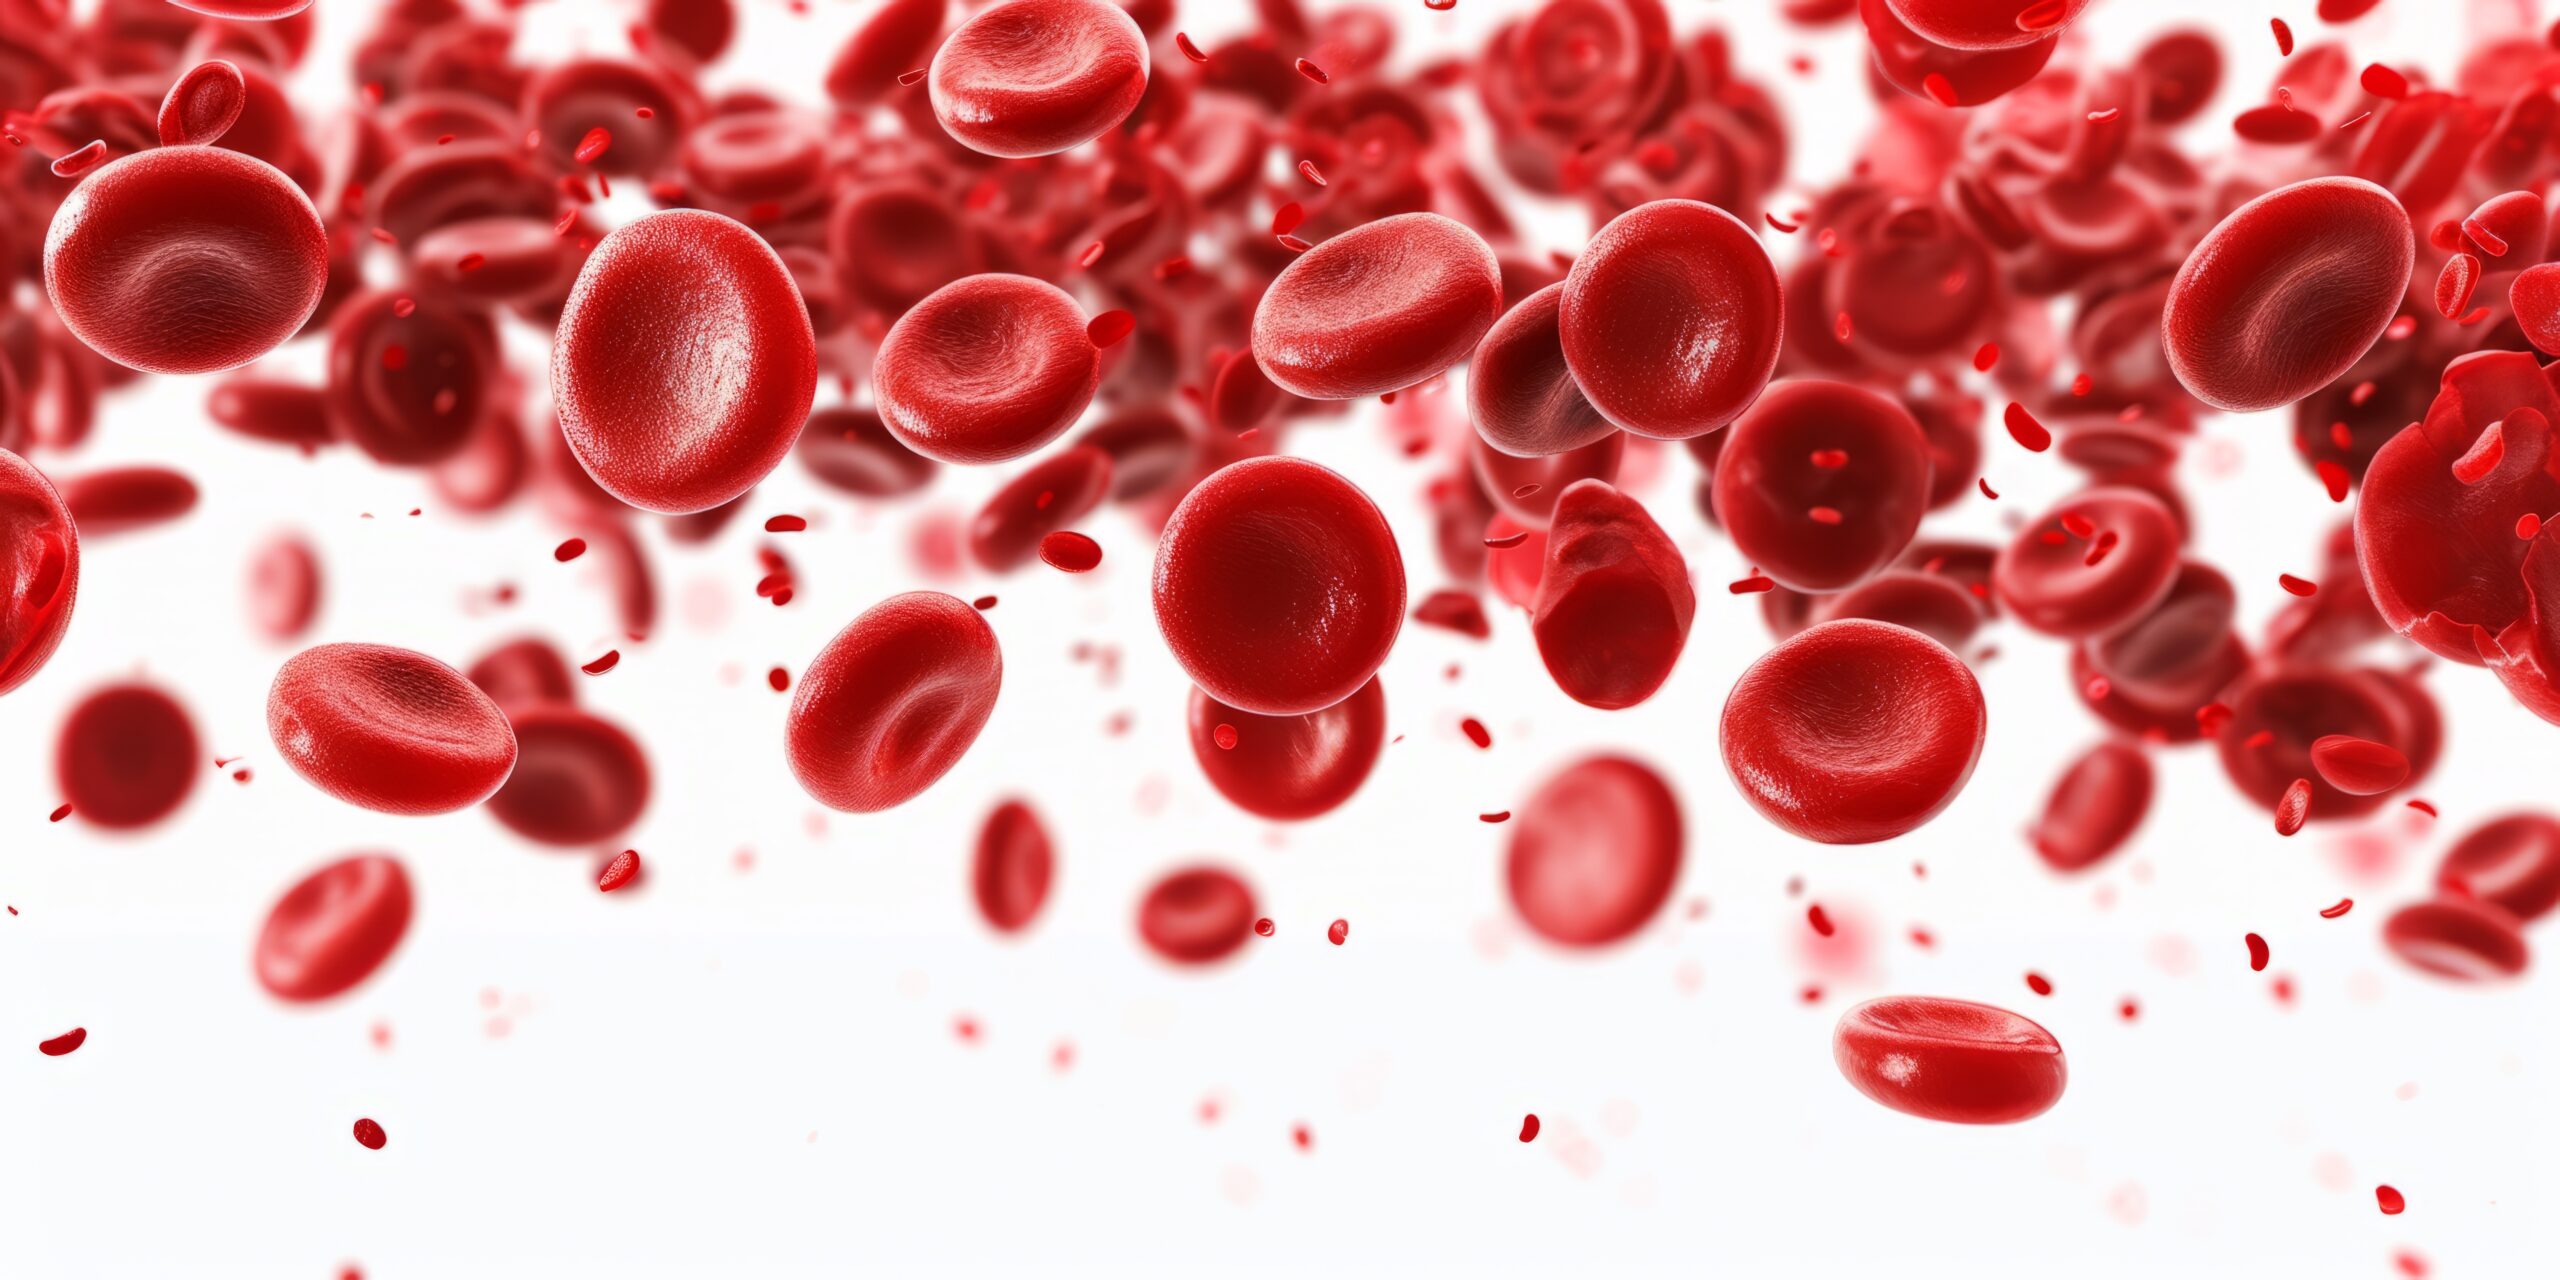 เลือดจาง - Anemia